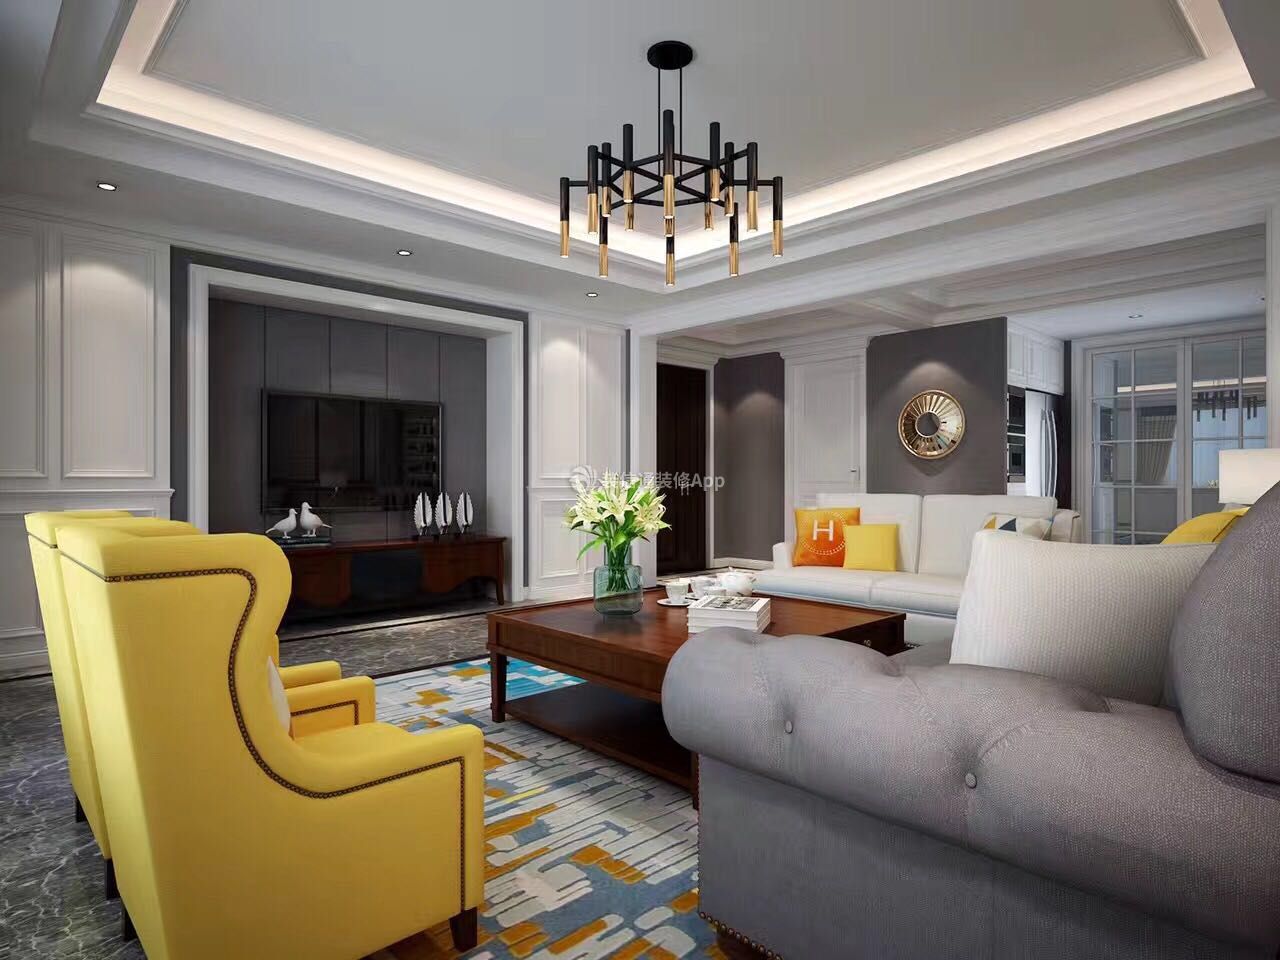 2020美式客厅设计 美式客厅风格 